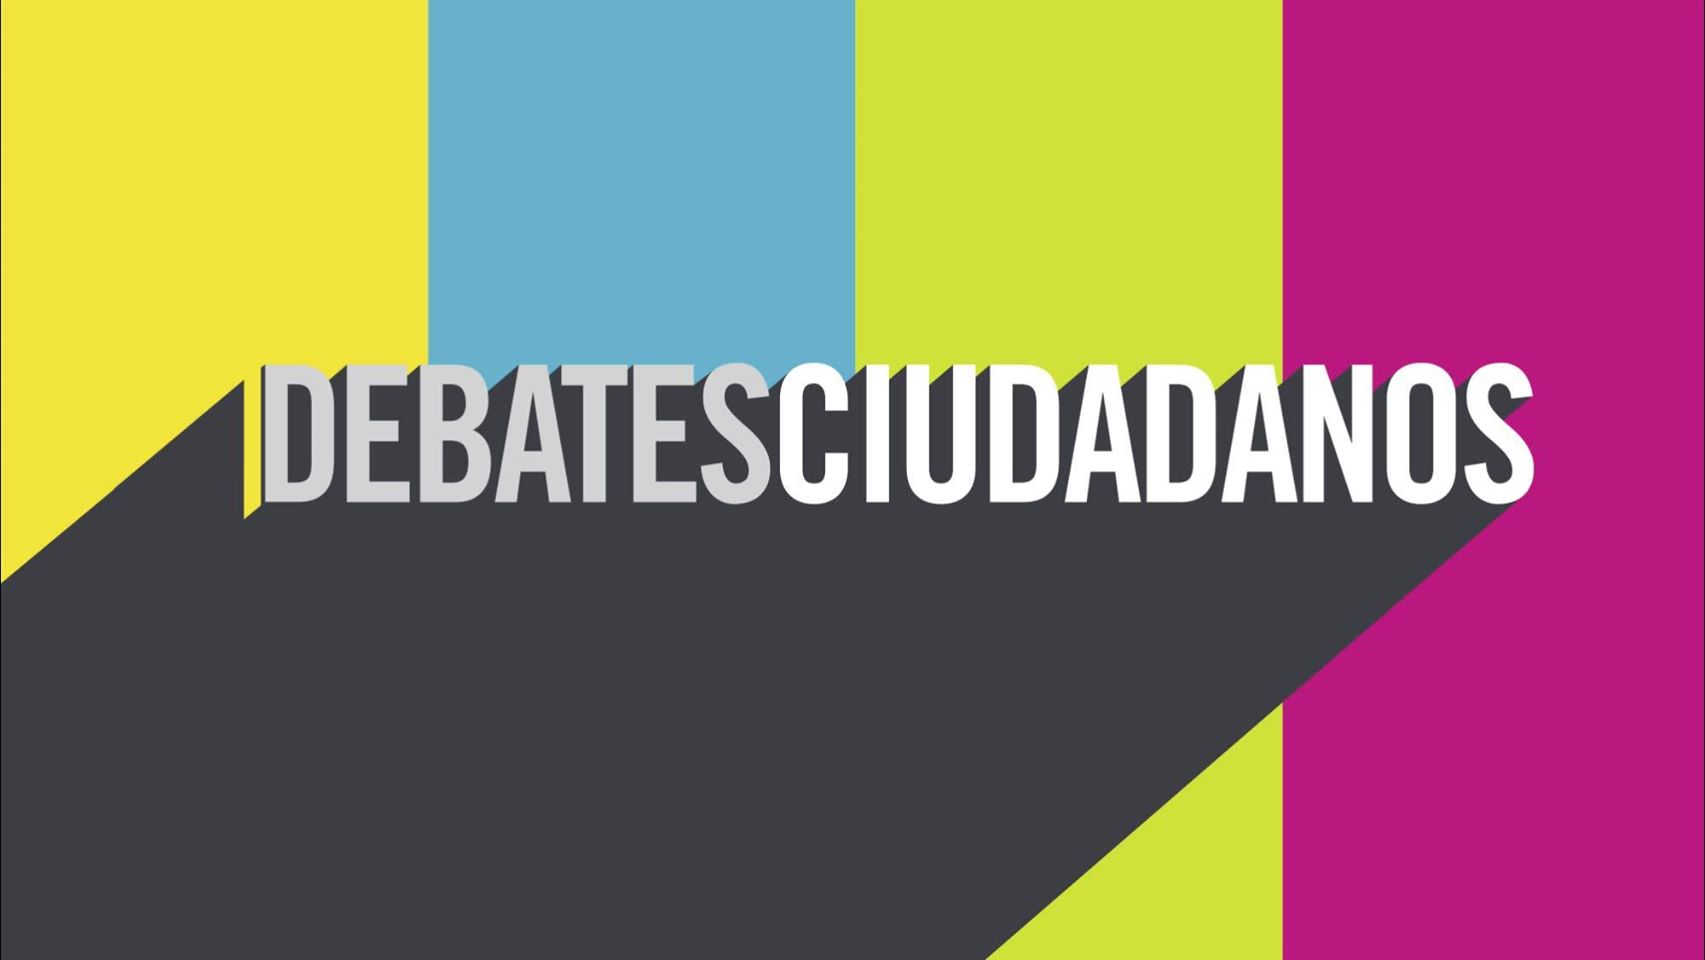 Realizarán Debates Ciudadanos en Guanajuato y Michoacán esta semana